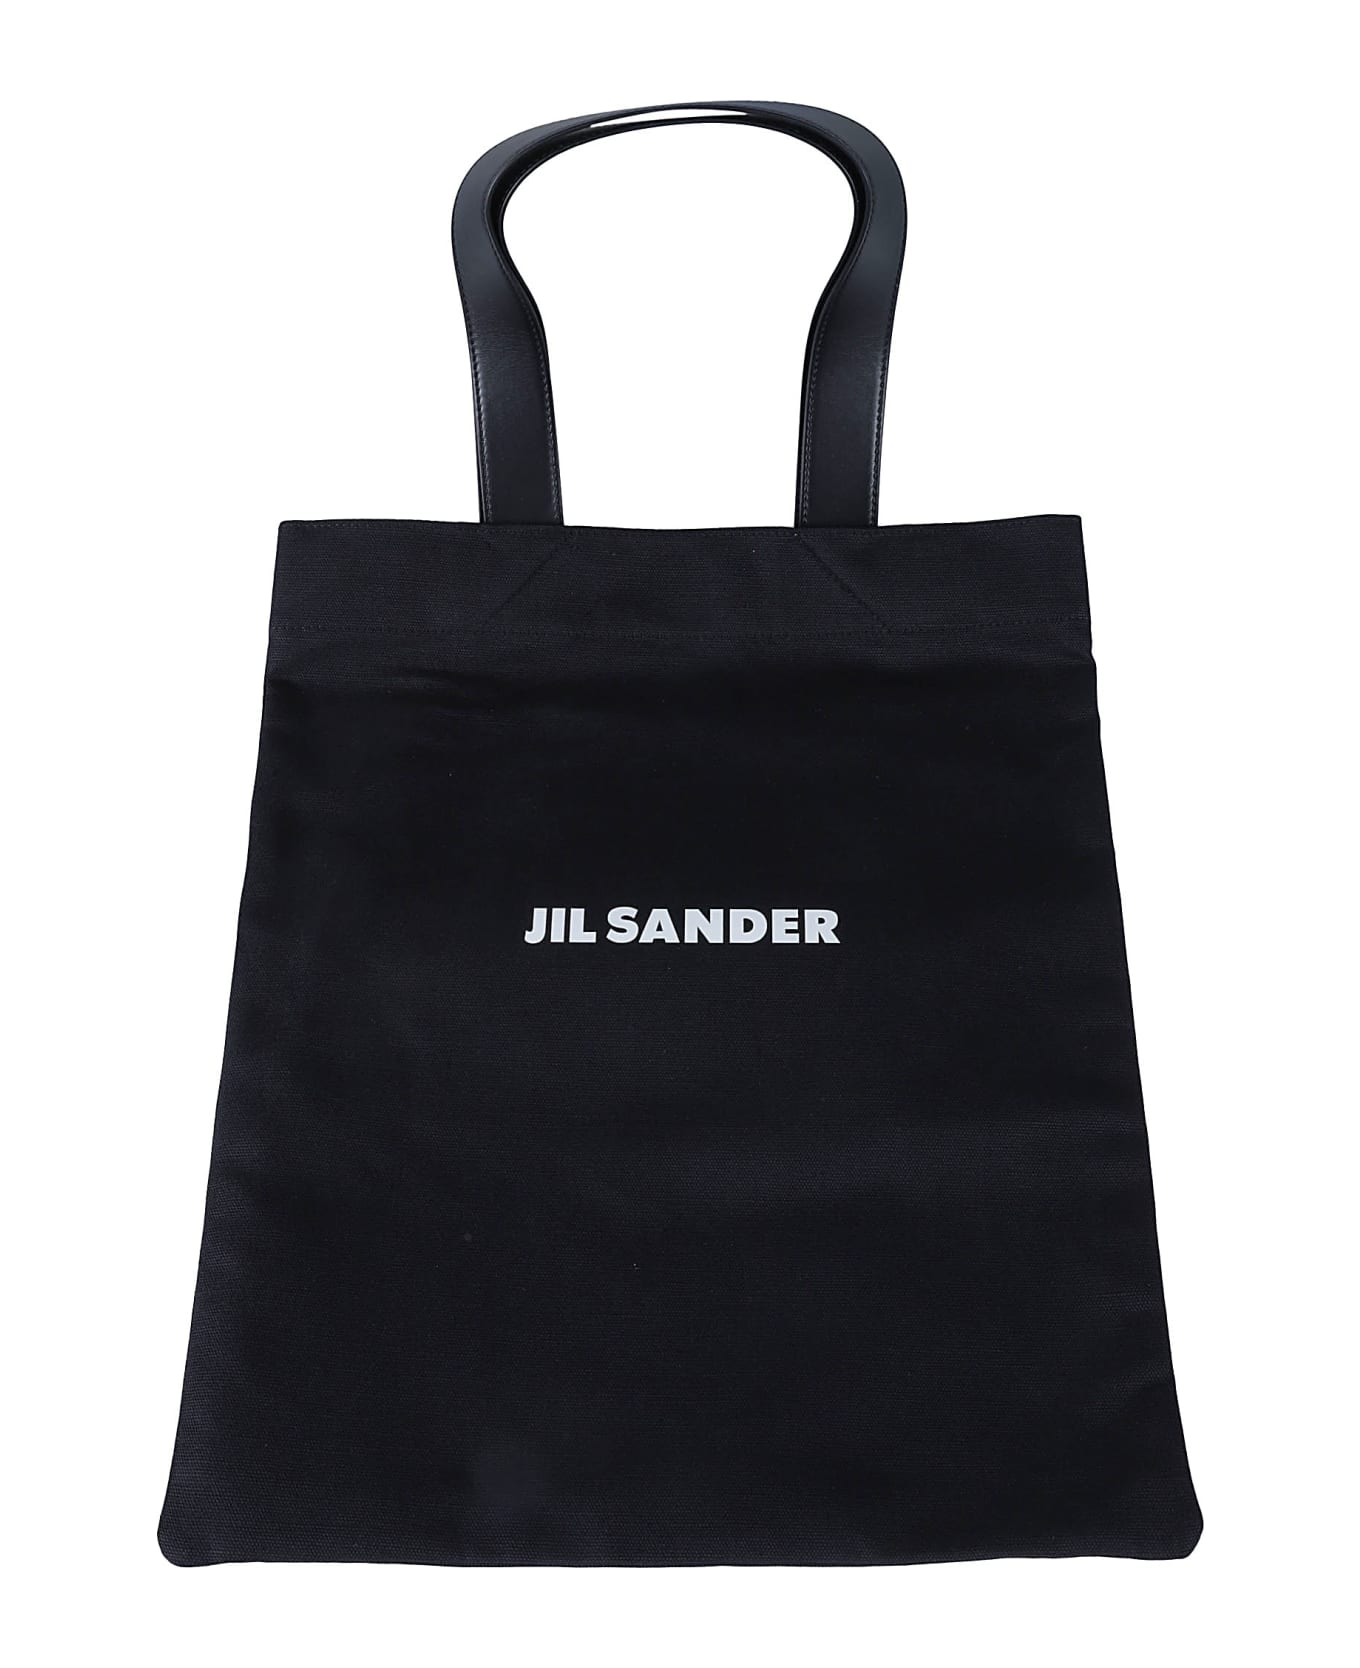 Jil Sander Logo Print Shopper Tote - Black